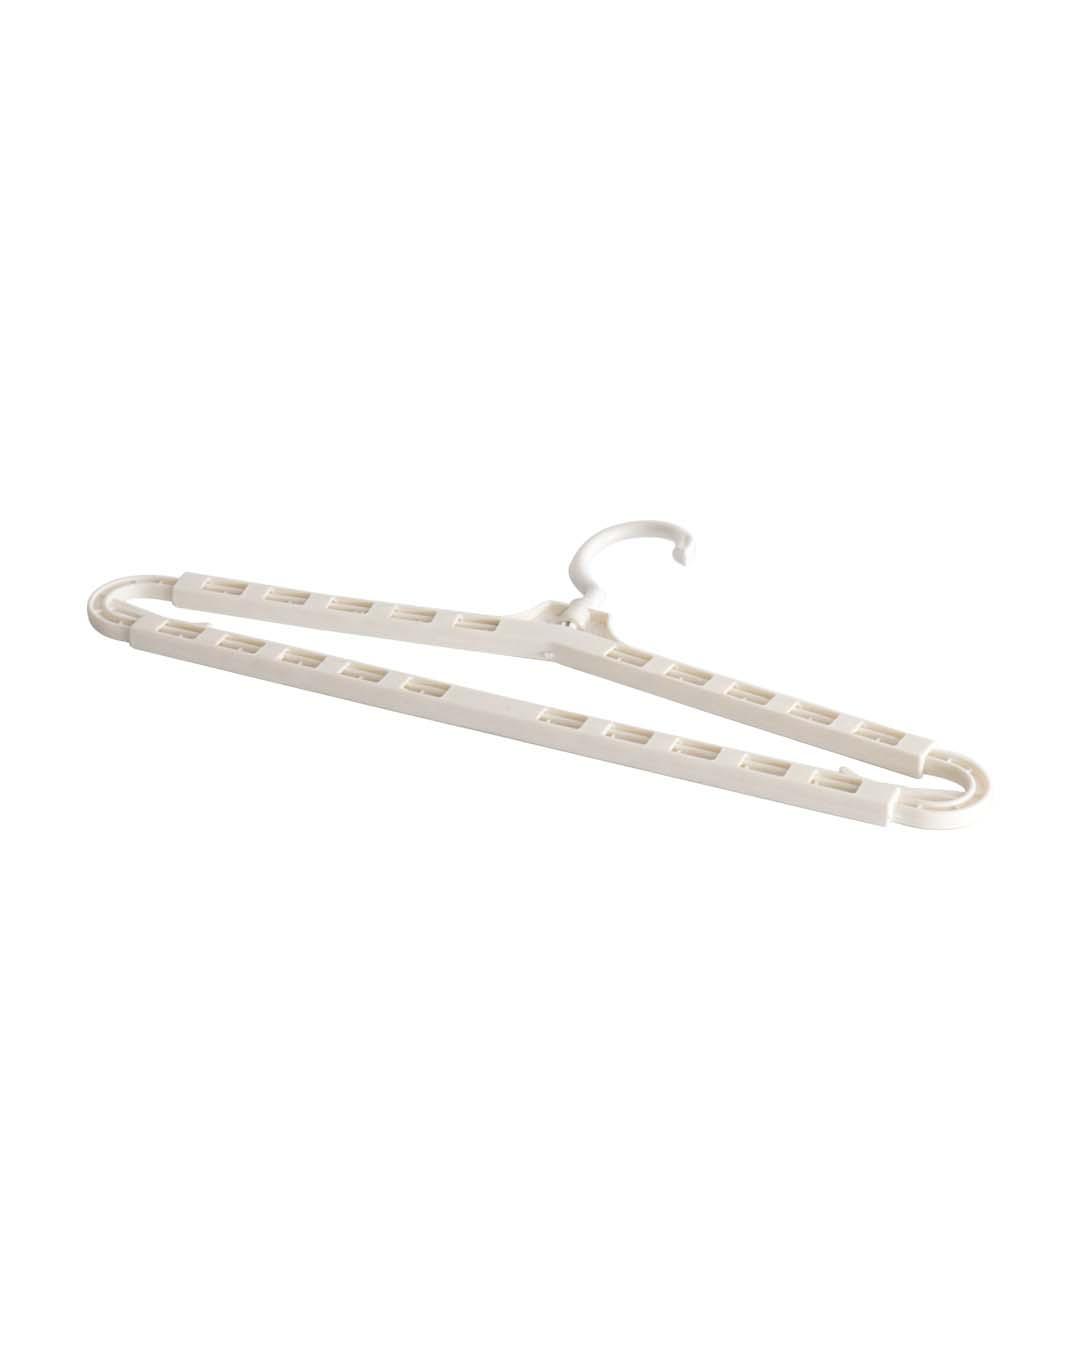 Extendable Hanger, White, Plastic - MARKET 99